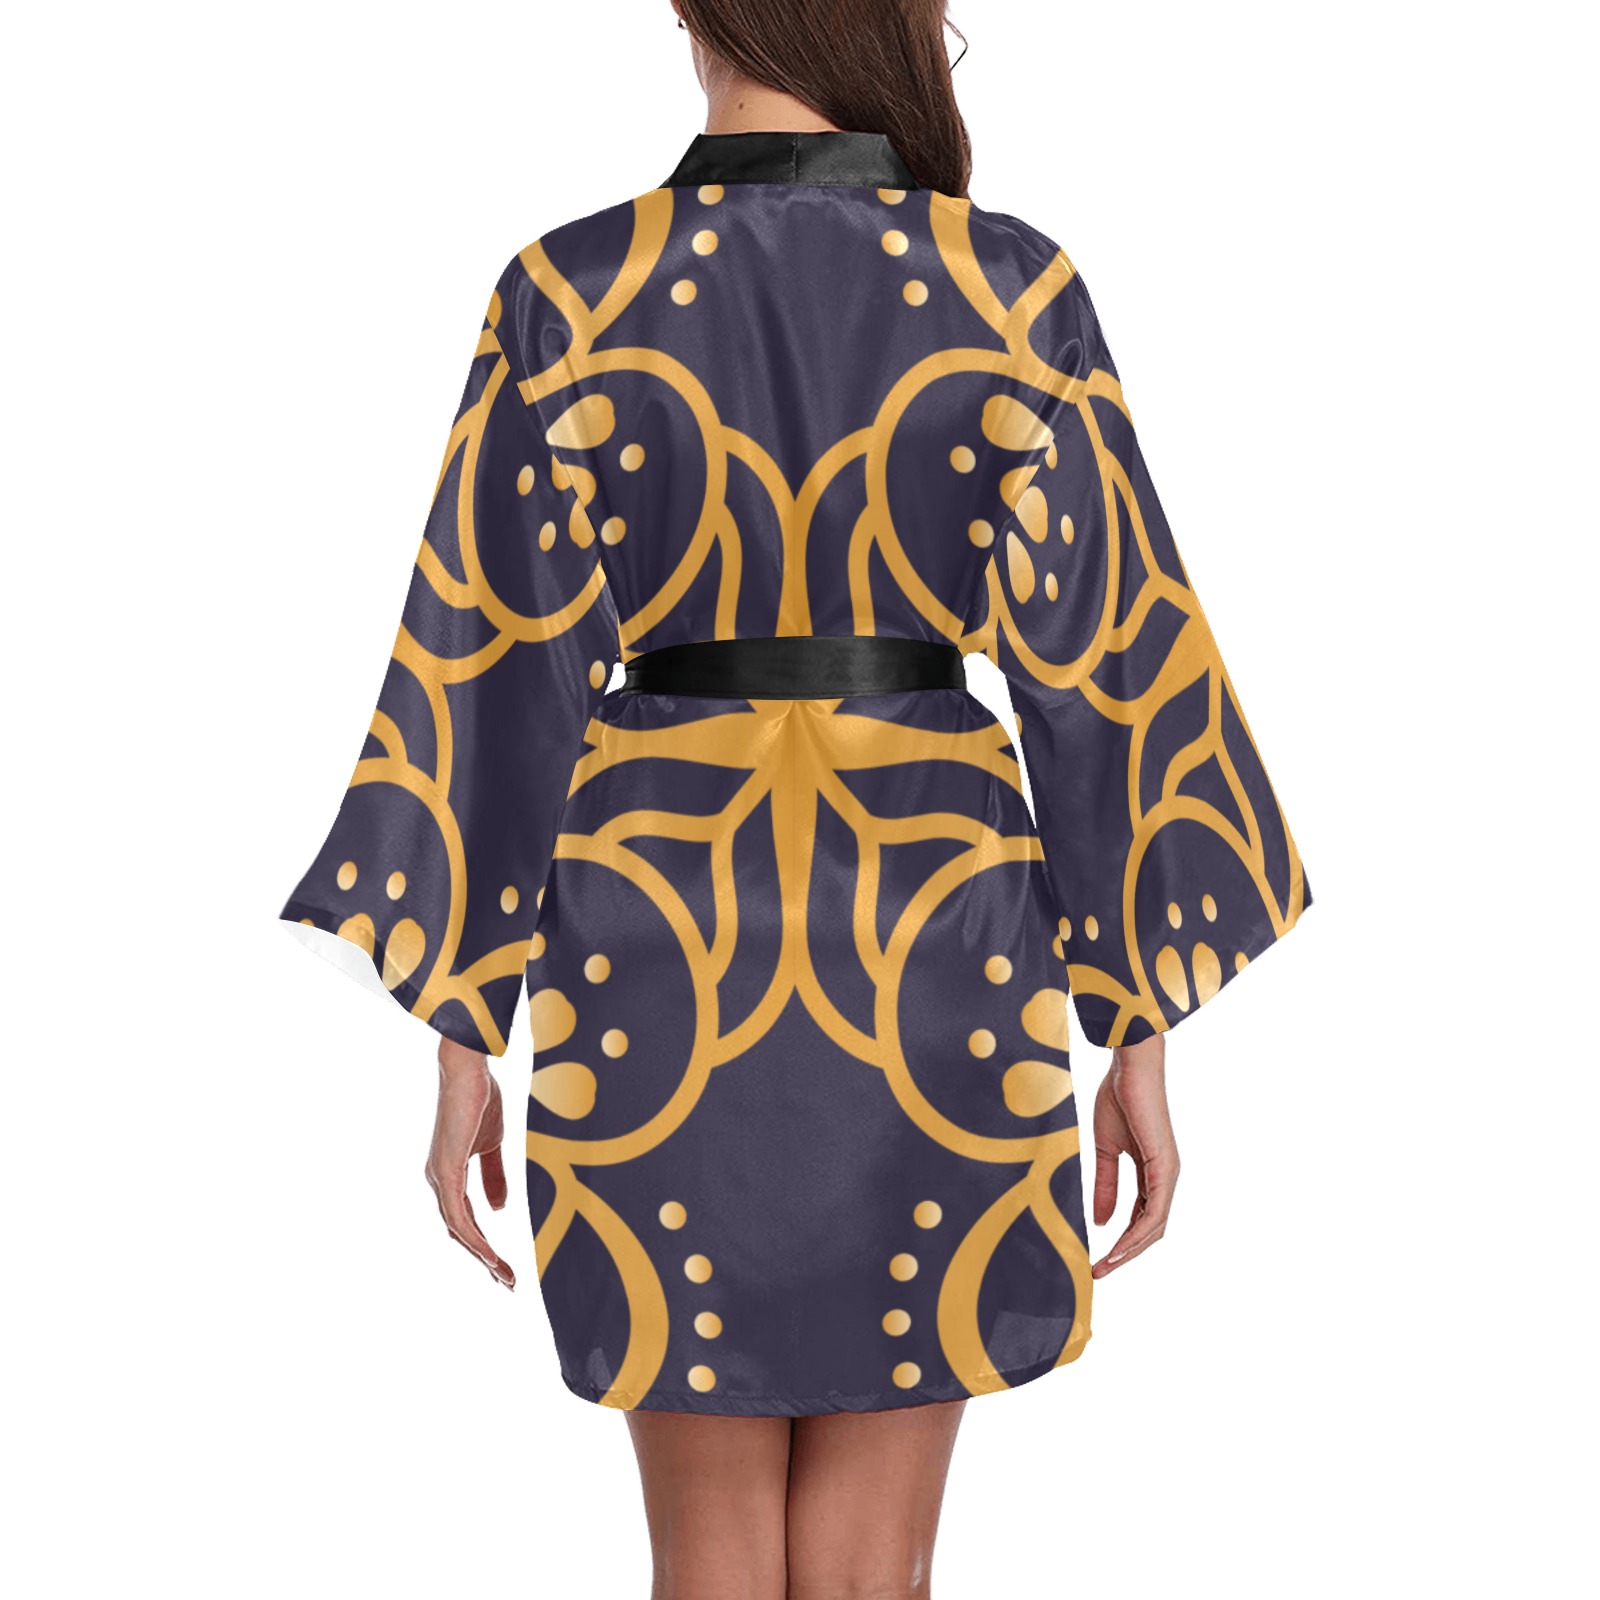 Mandala Long Sleeve Kimono Robe